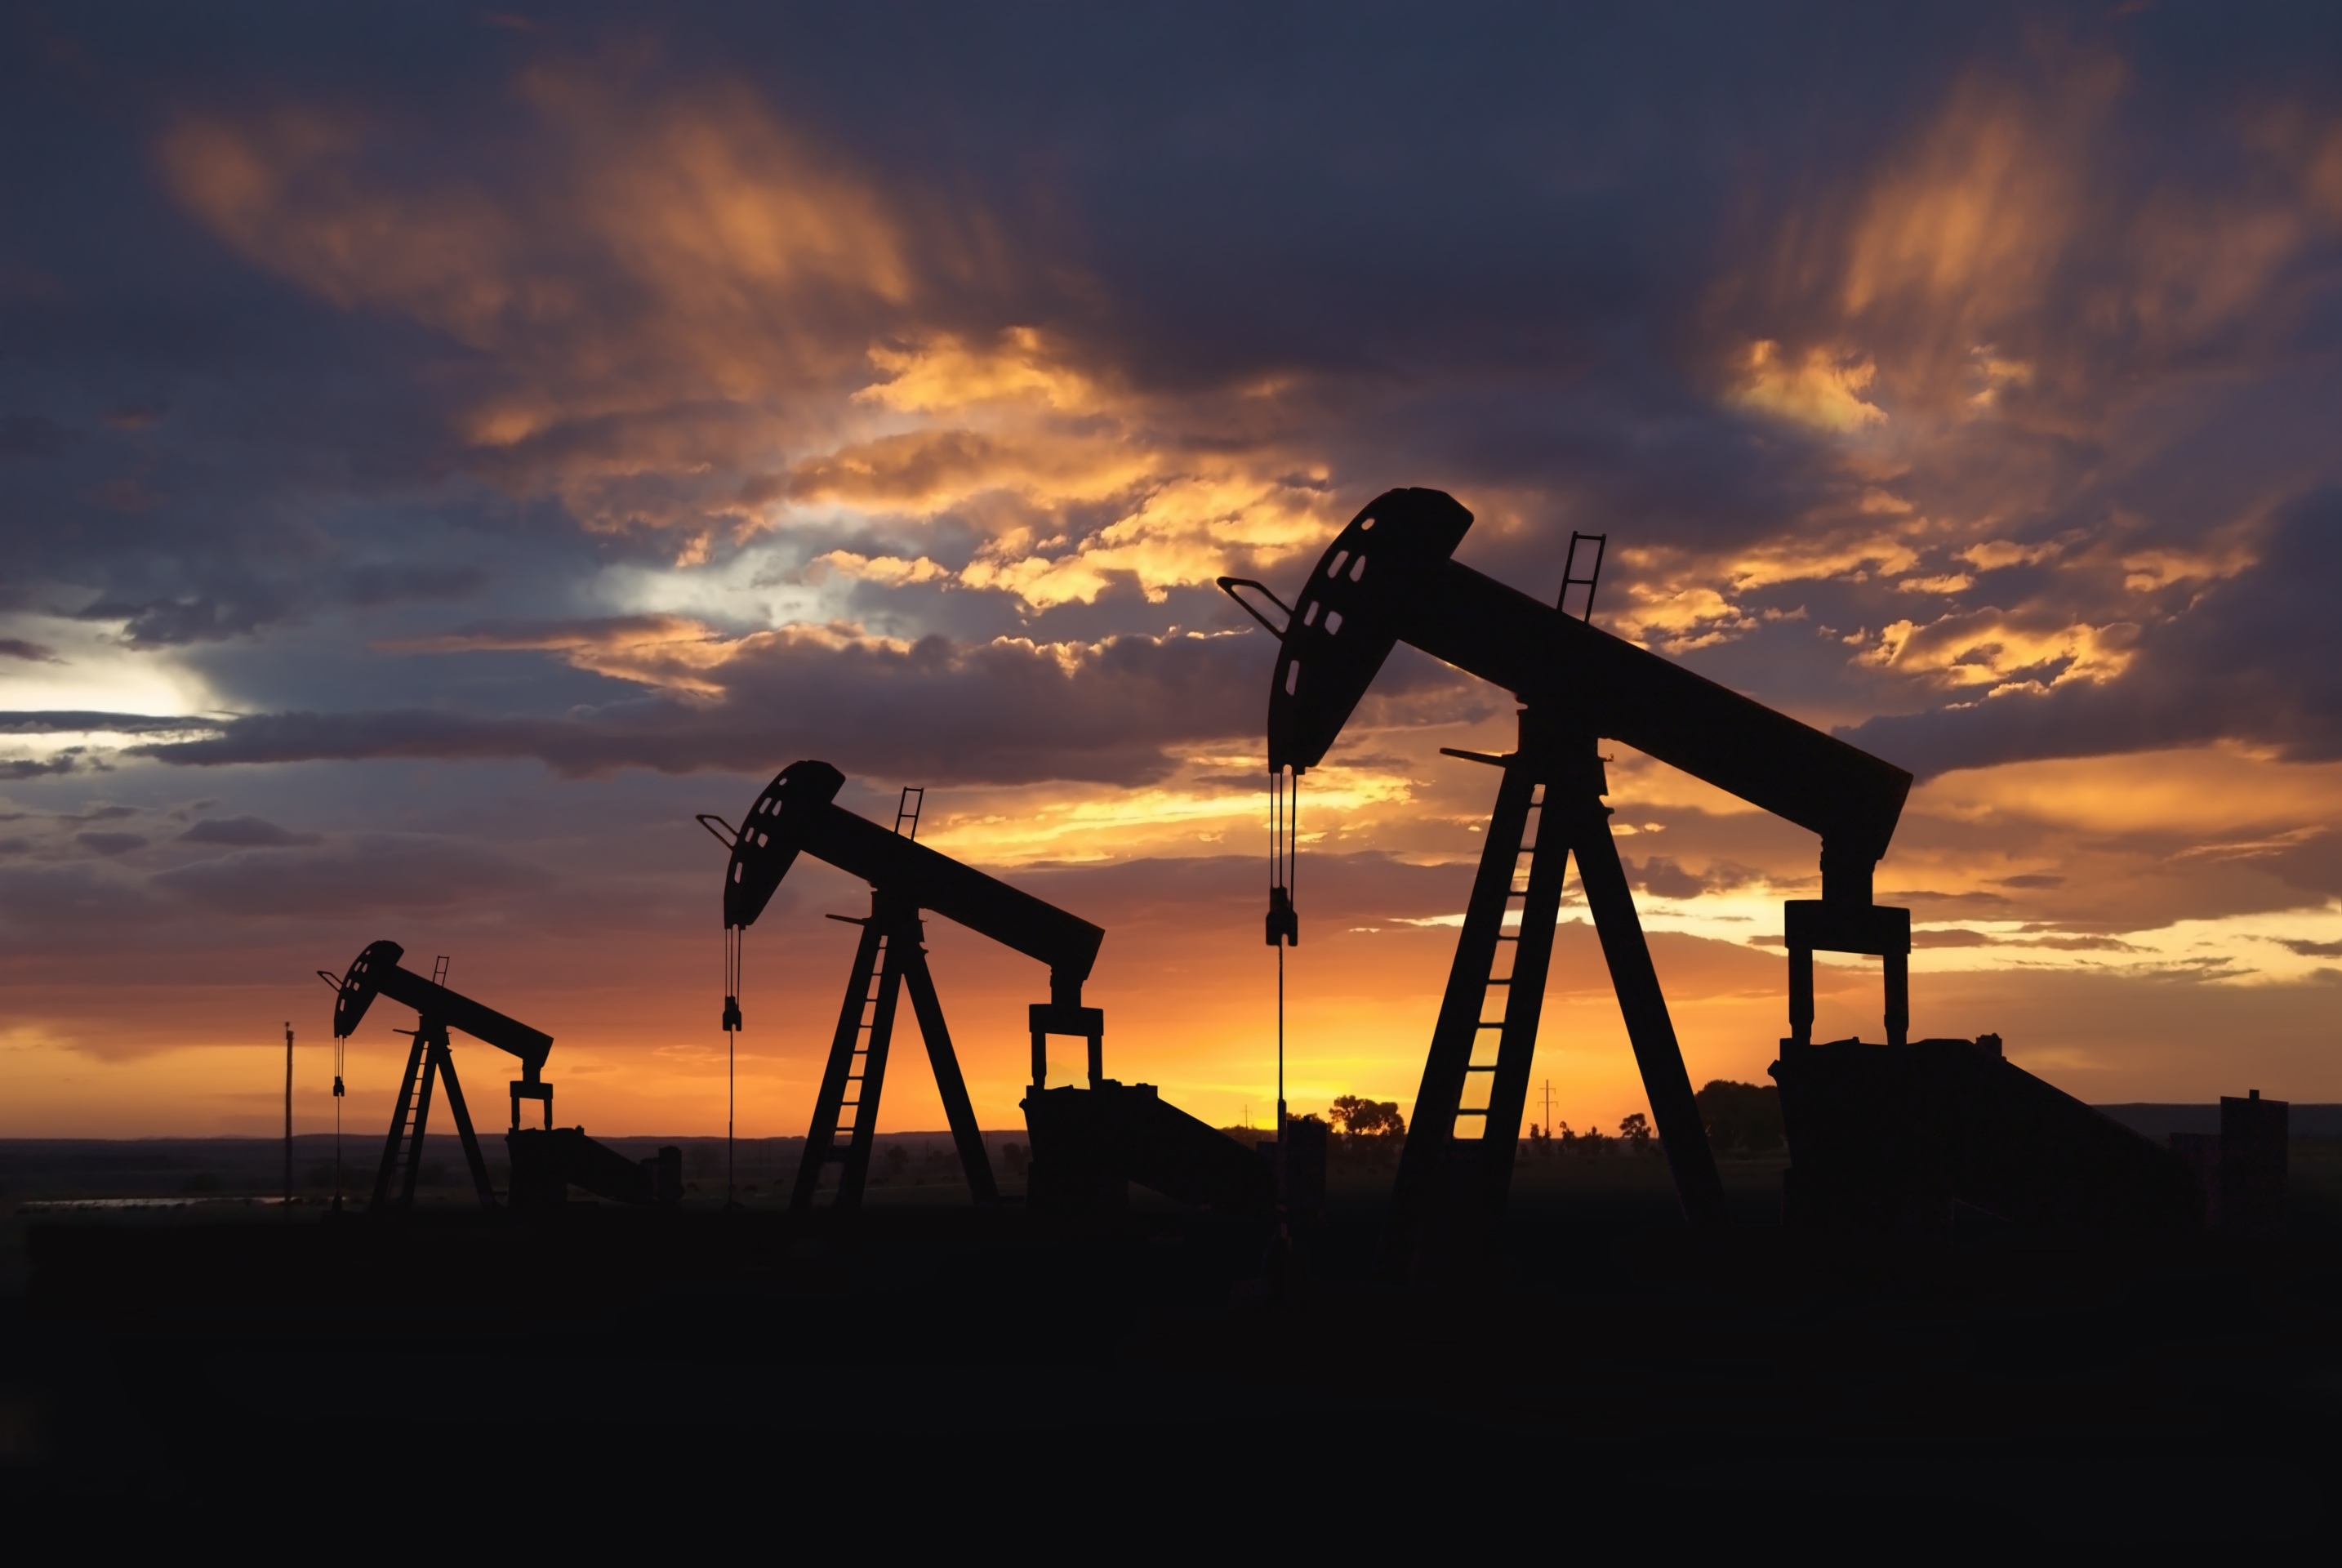 Саудијска Арабија: Гориво поскупљује за 50% да би се покрила рупа у буџету због ниских цена нафте на светском тржишту